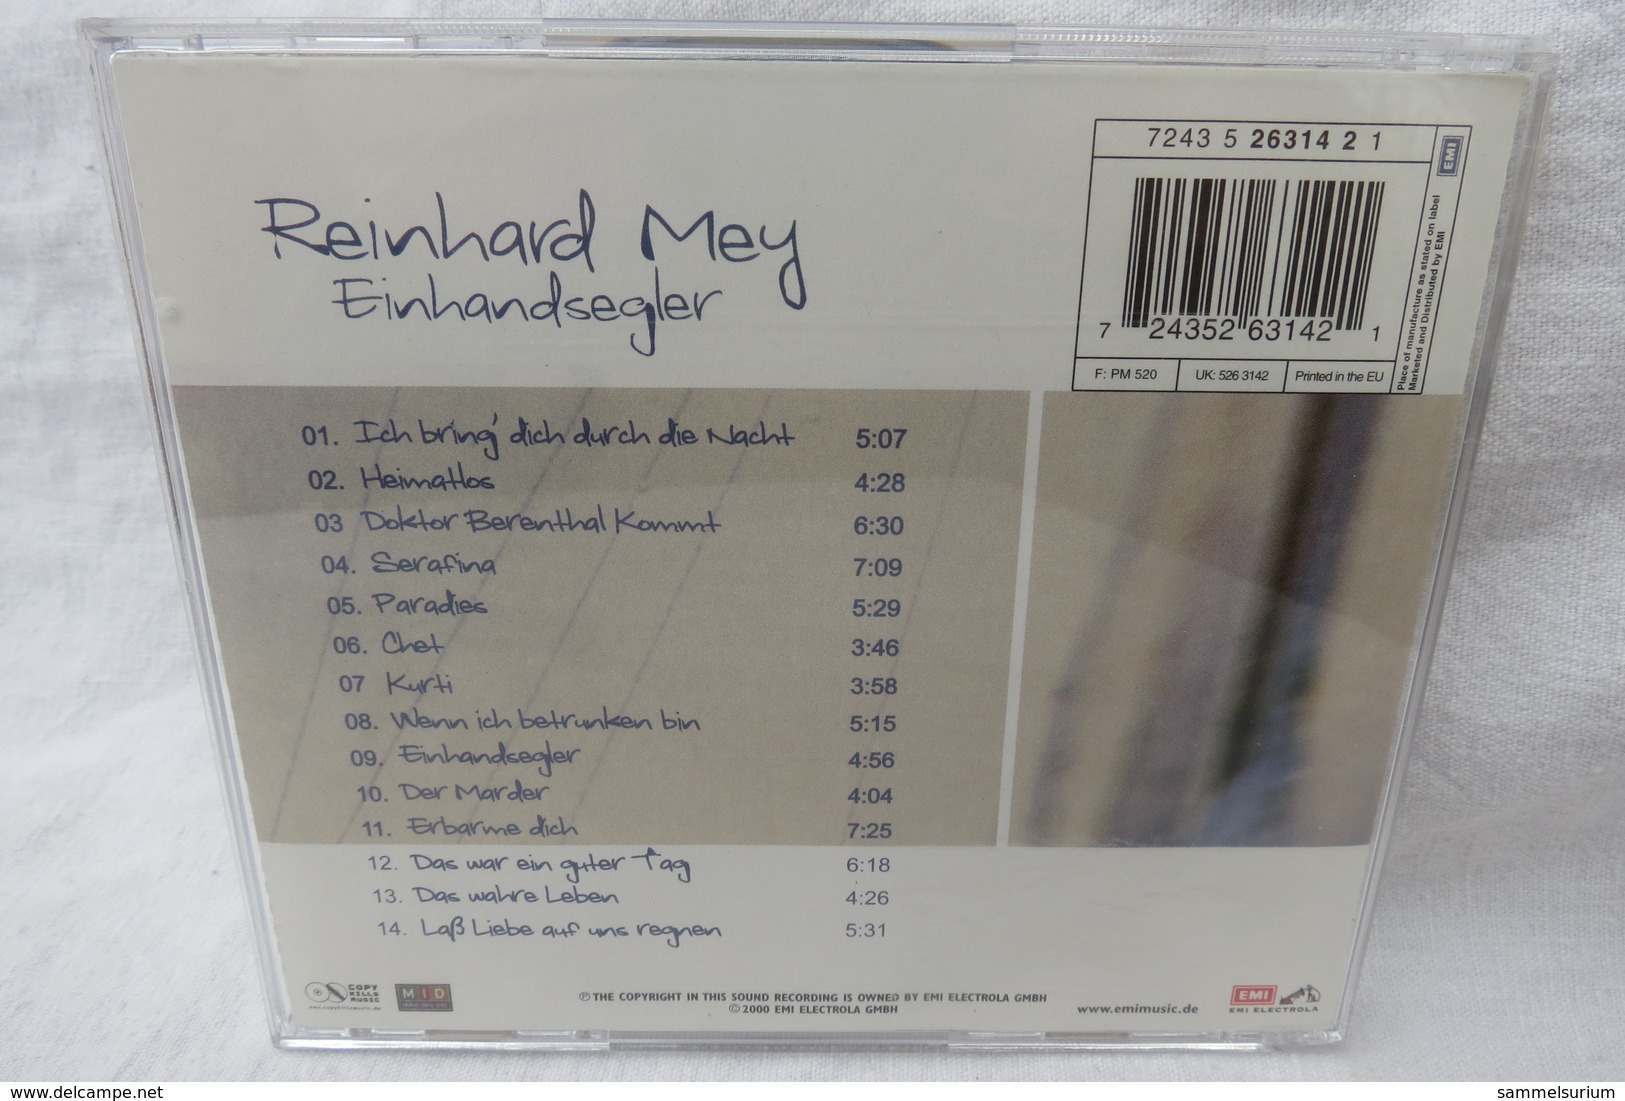 CD "Reinhard Mey" Einhandsegler - Autres - Musique Allemande